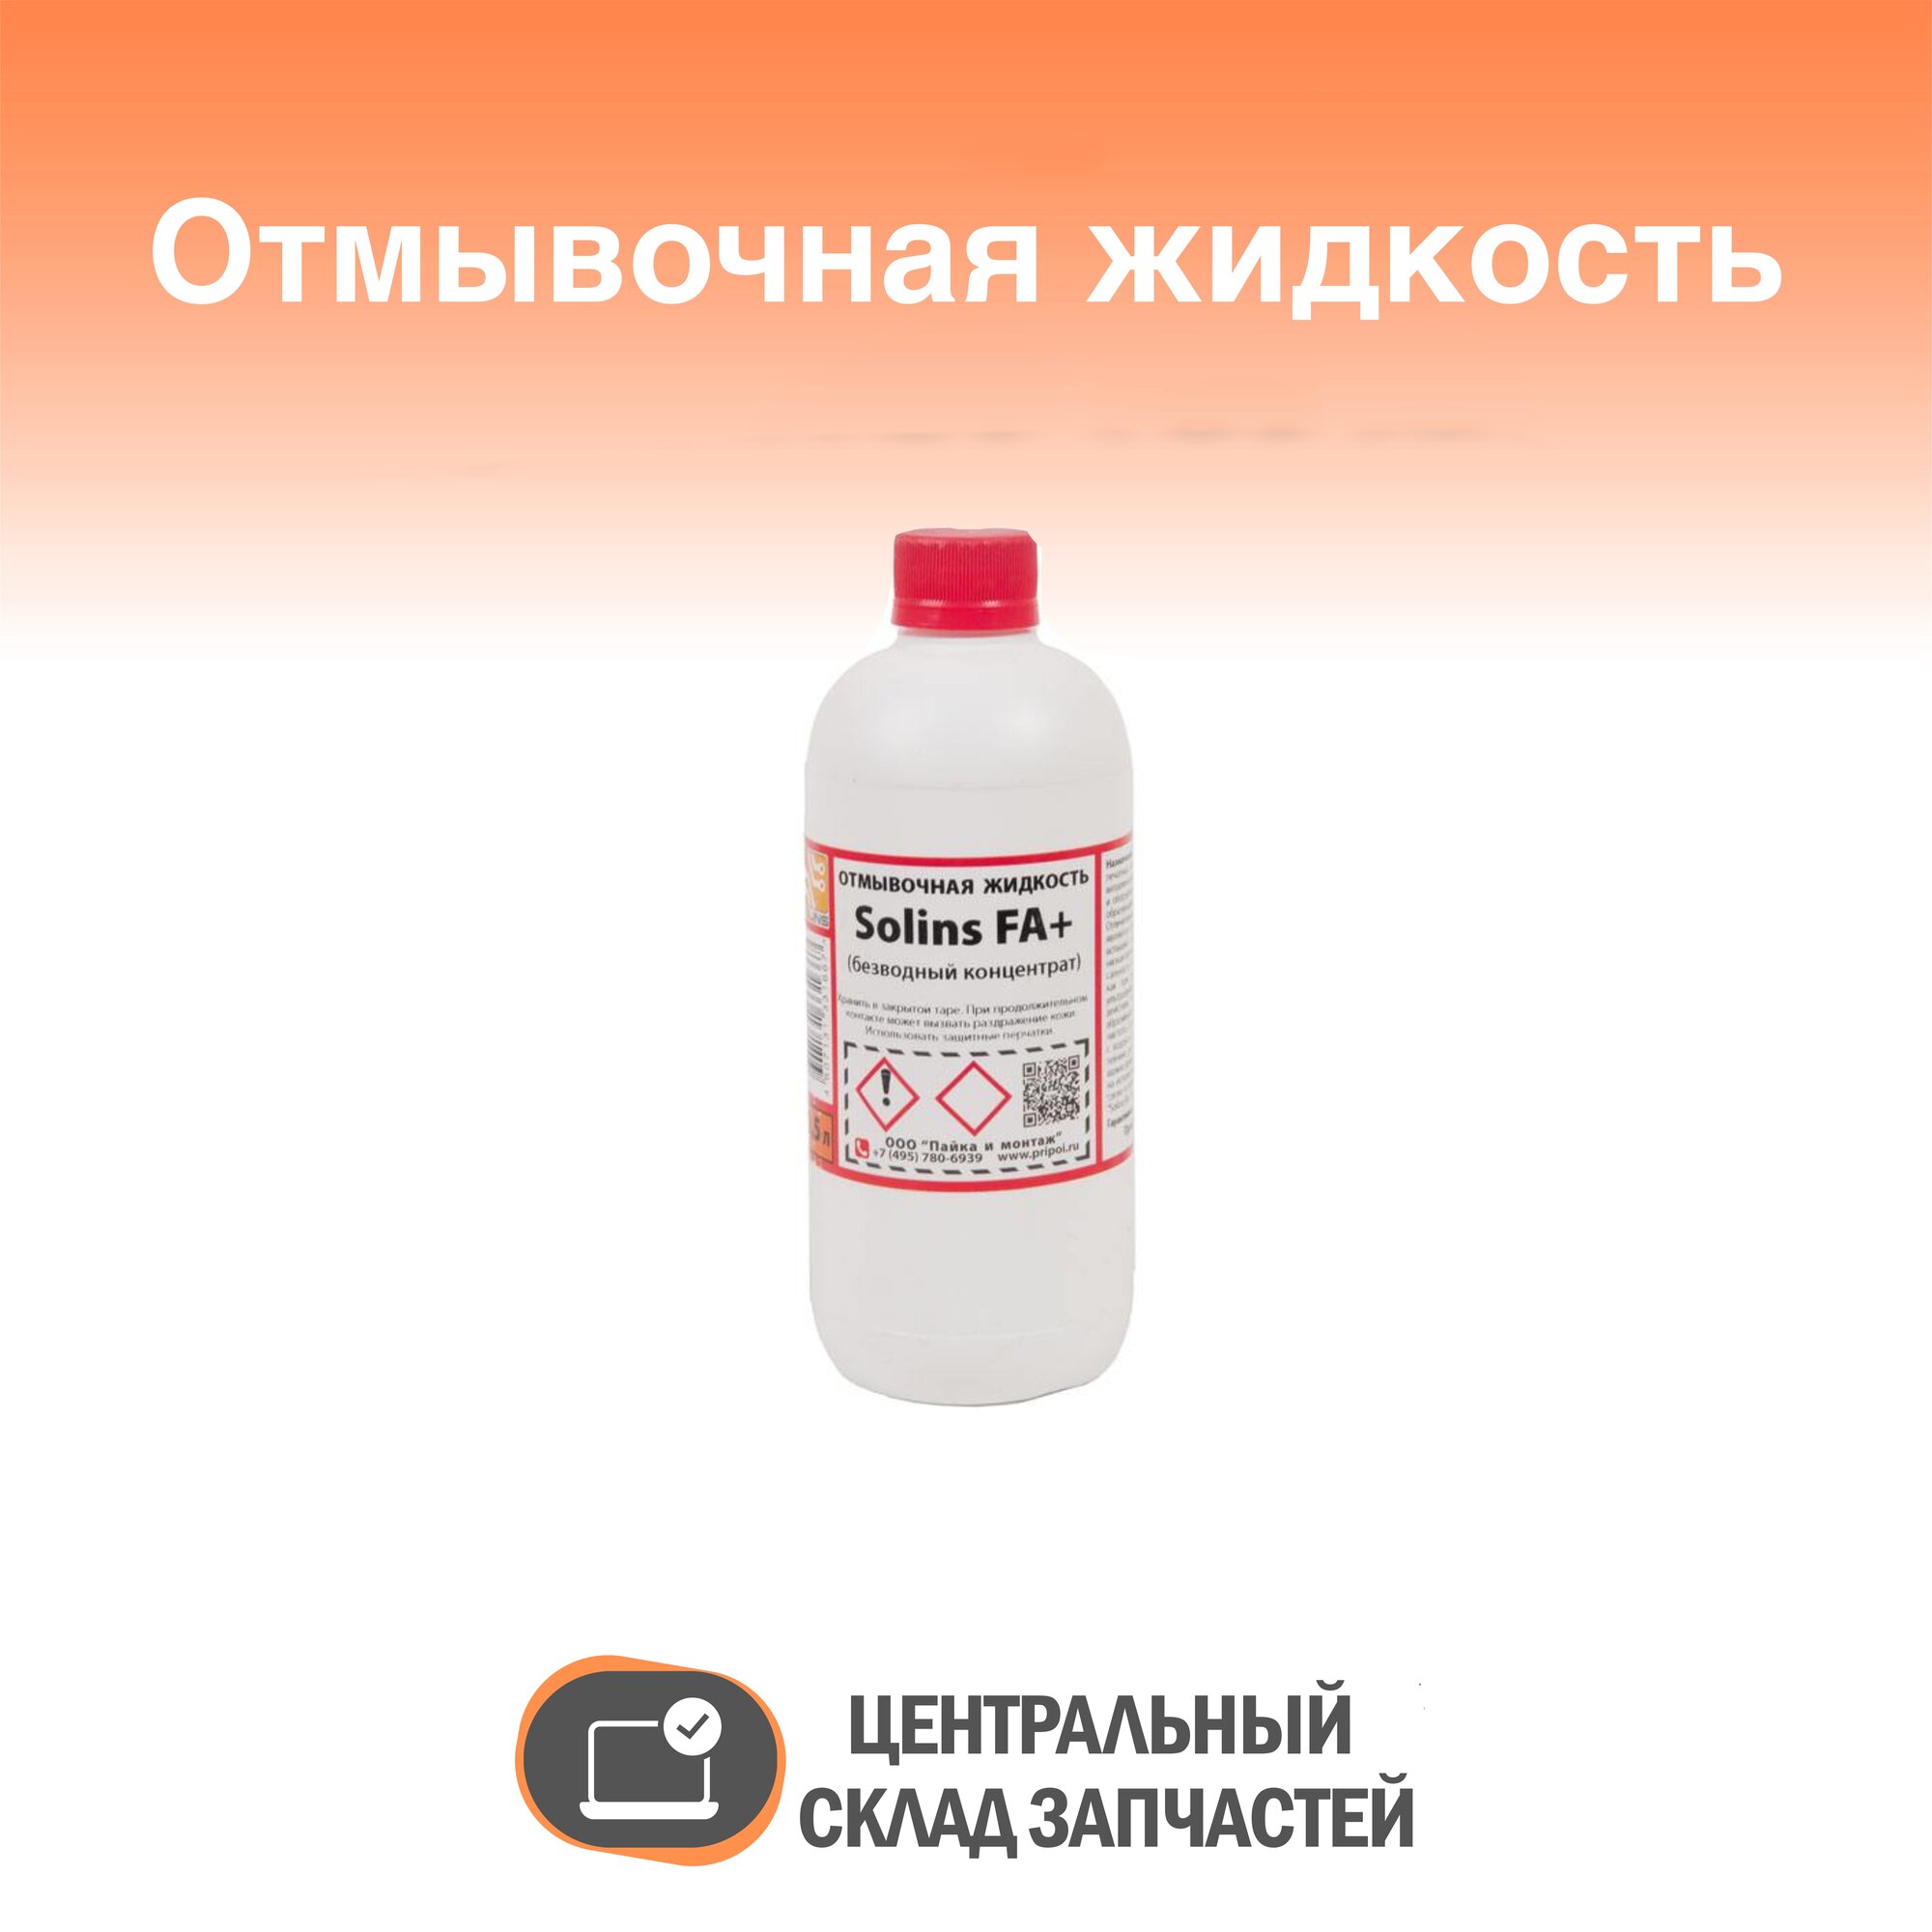 Solins-FA+ Отмывочная жидкость для ультразвуковых ванн Solins-FA+ объем 500 мл